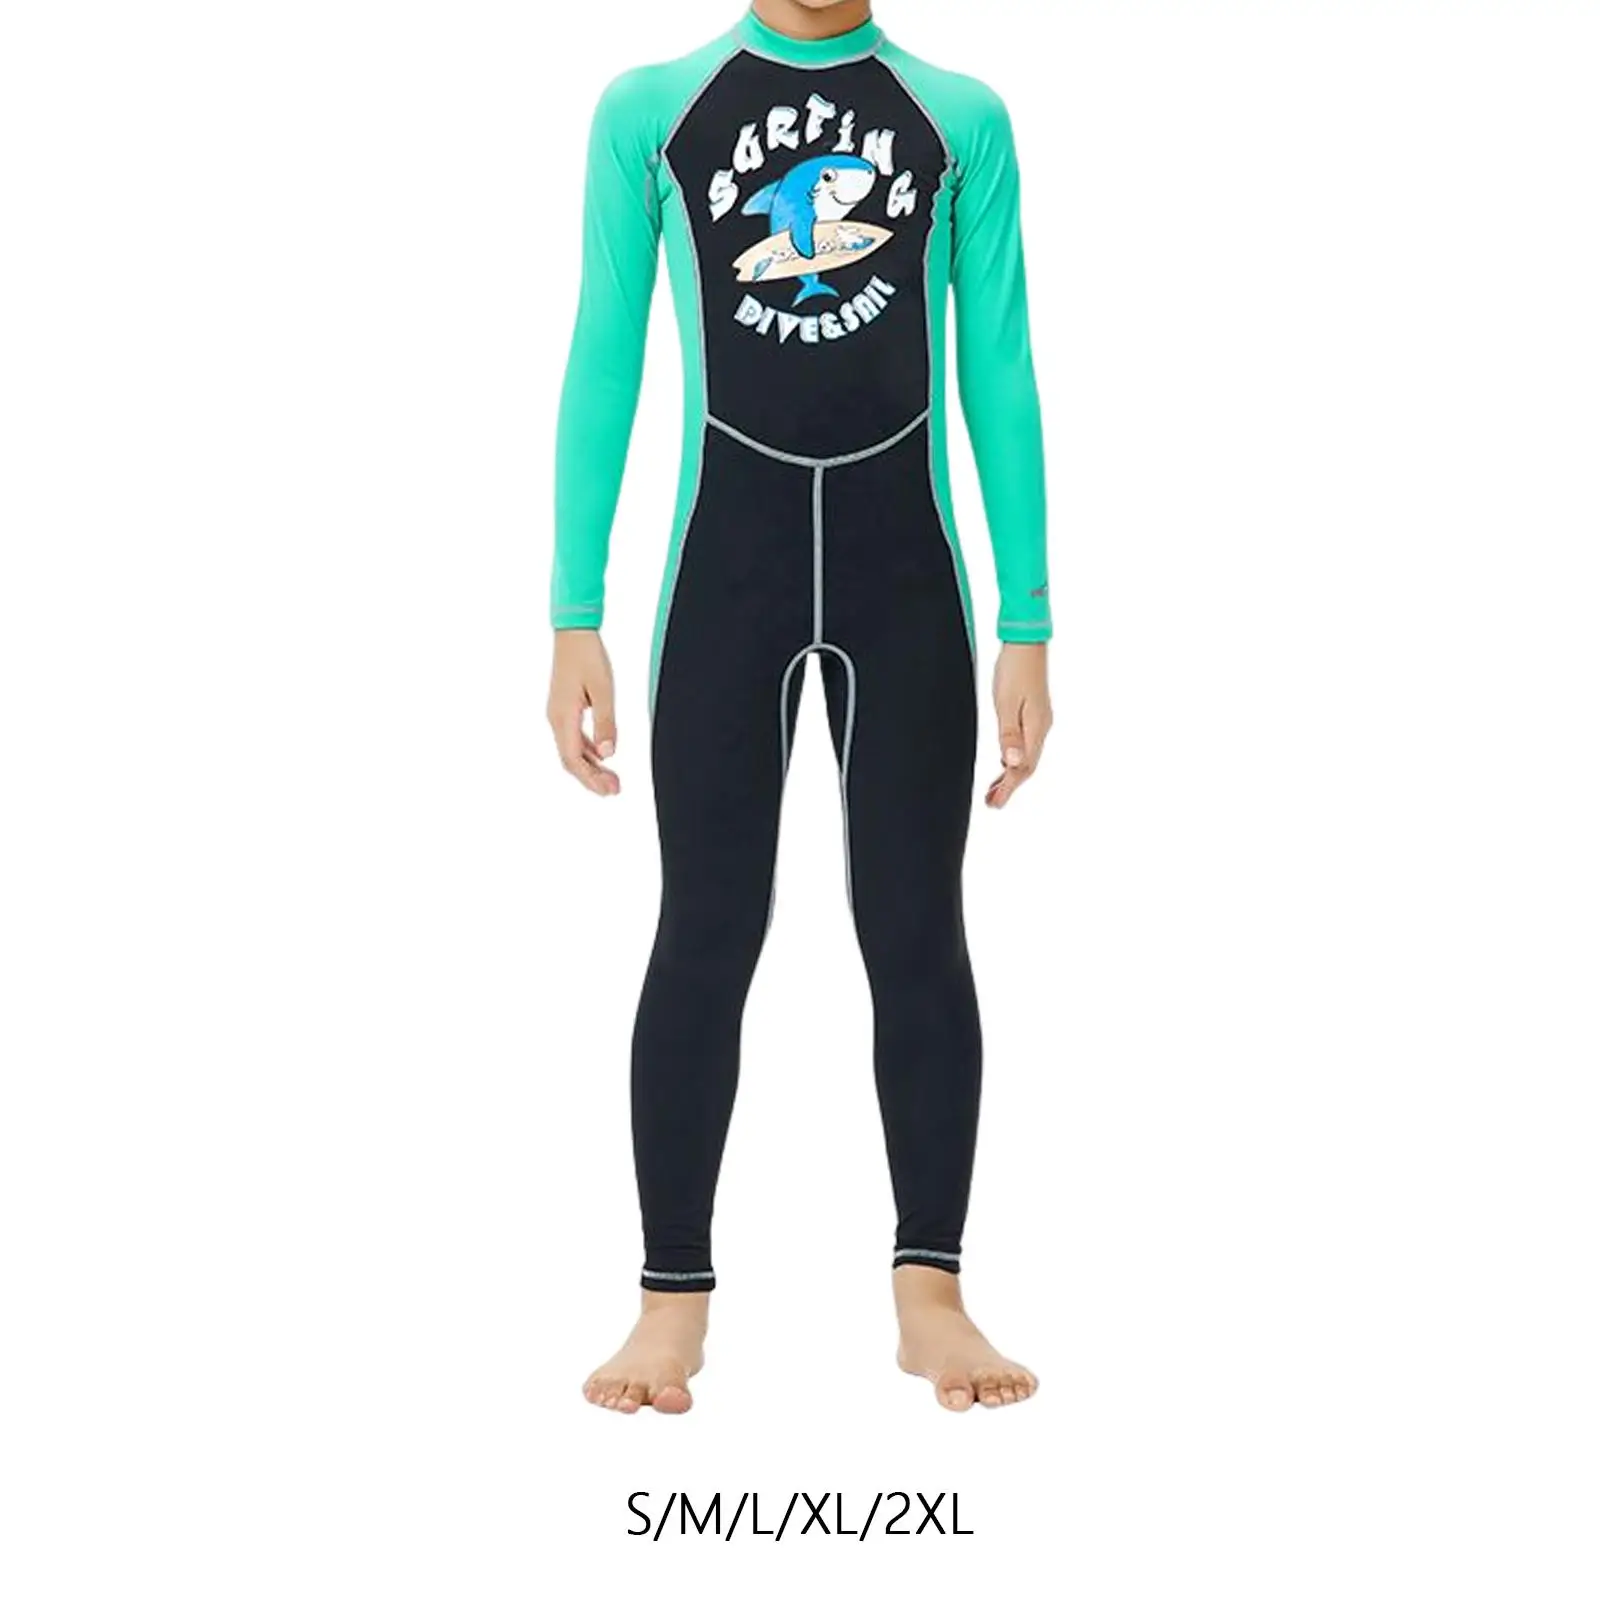 Kids Wetsuit Swimsuit Full suits Scuba Diving Suit Long Sleeve Wet Suit for Snorkeling Surfing Boys